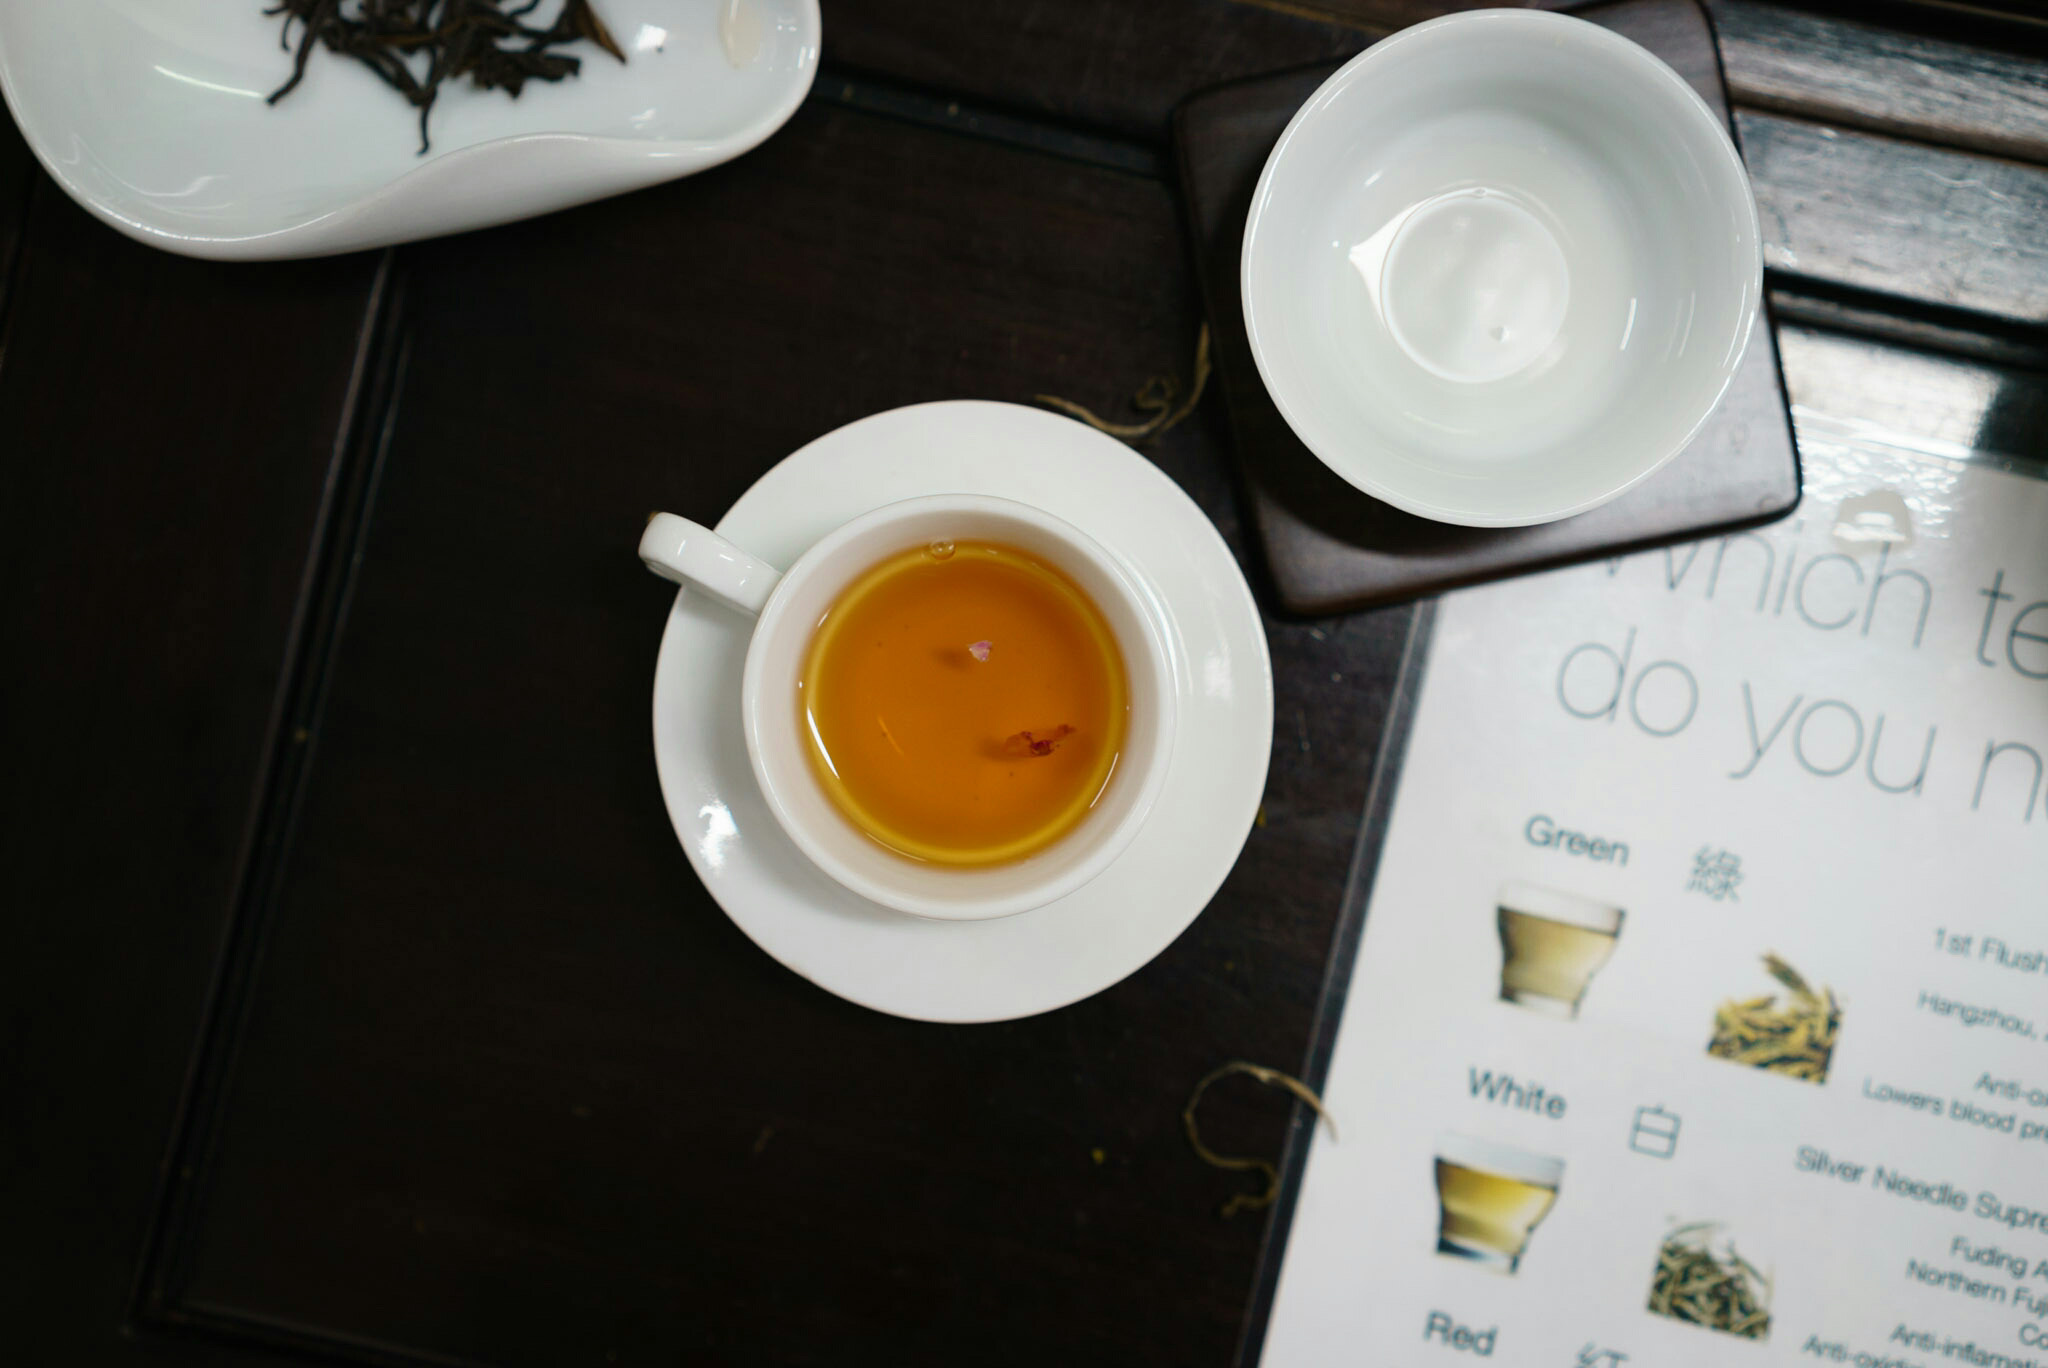 Tea tasting in Hong Kong